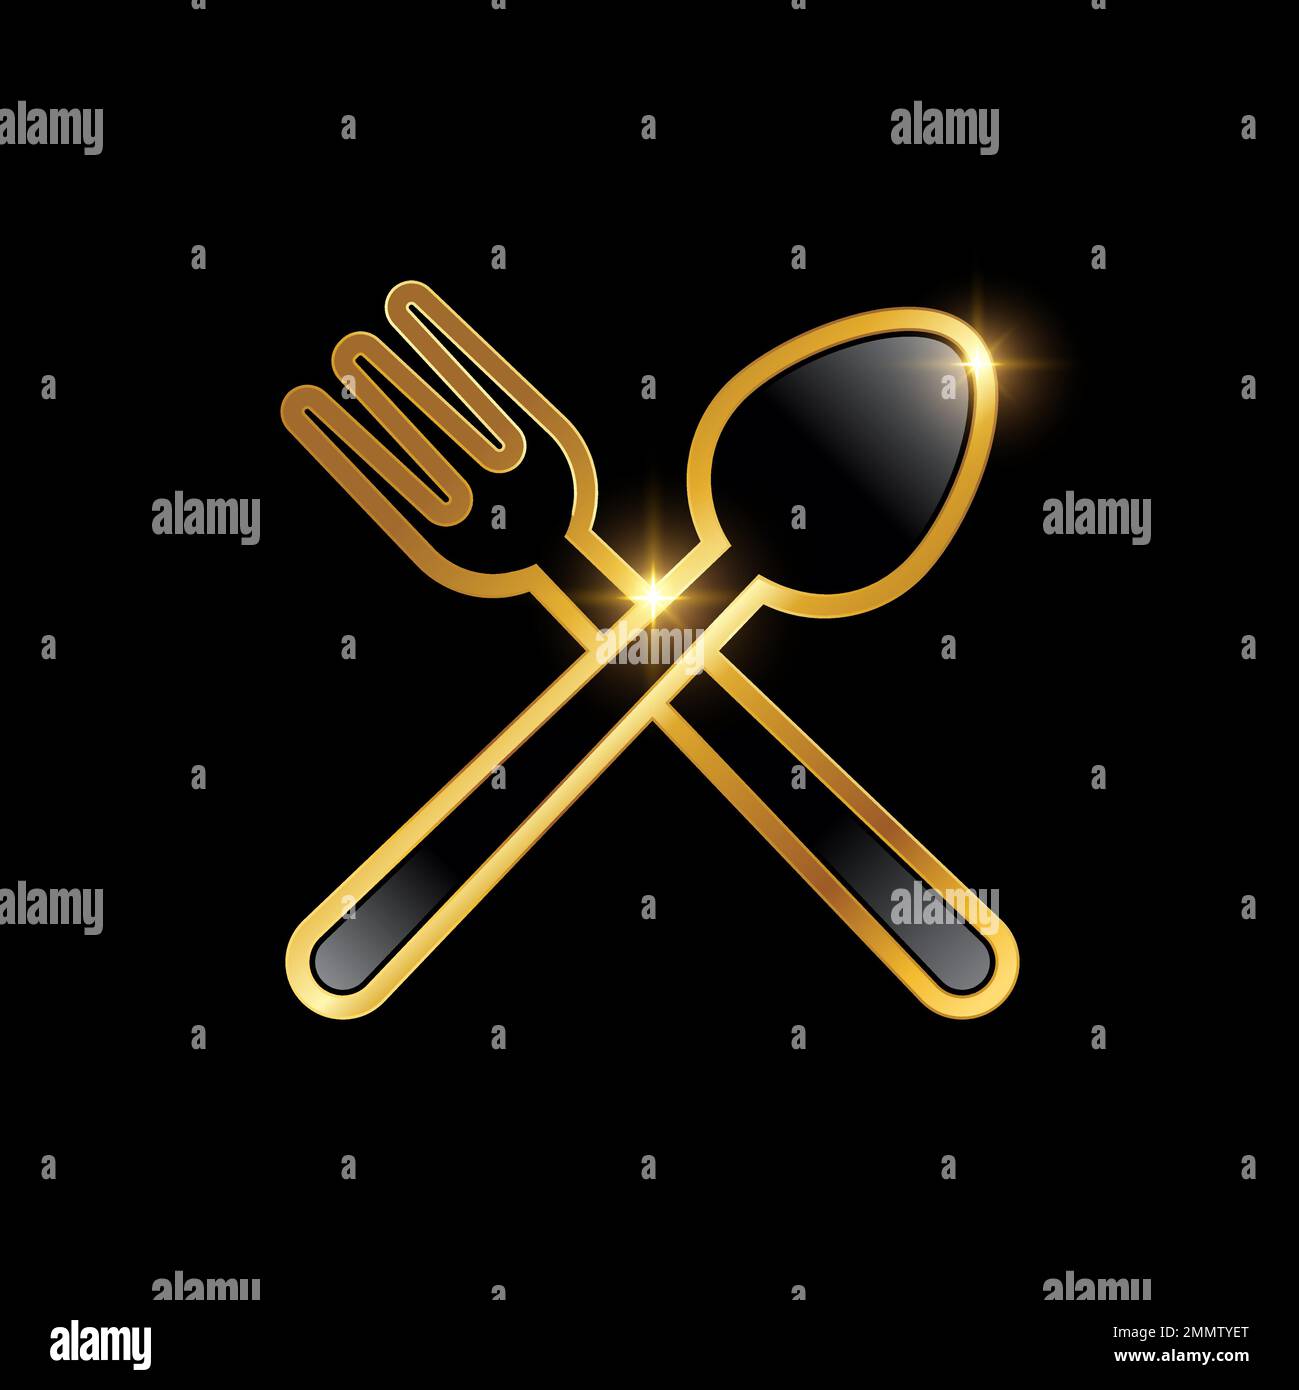 Goldener Luxus-Löffel und Gabel-Kreuz-Symbol auf schwarzem Hintergrund mit goldenem Glanzeffekt Stock Vektor